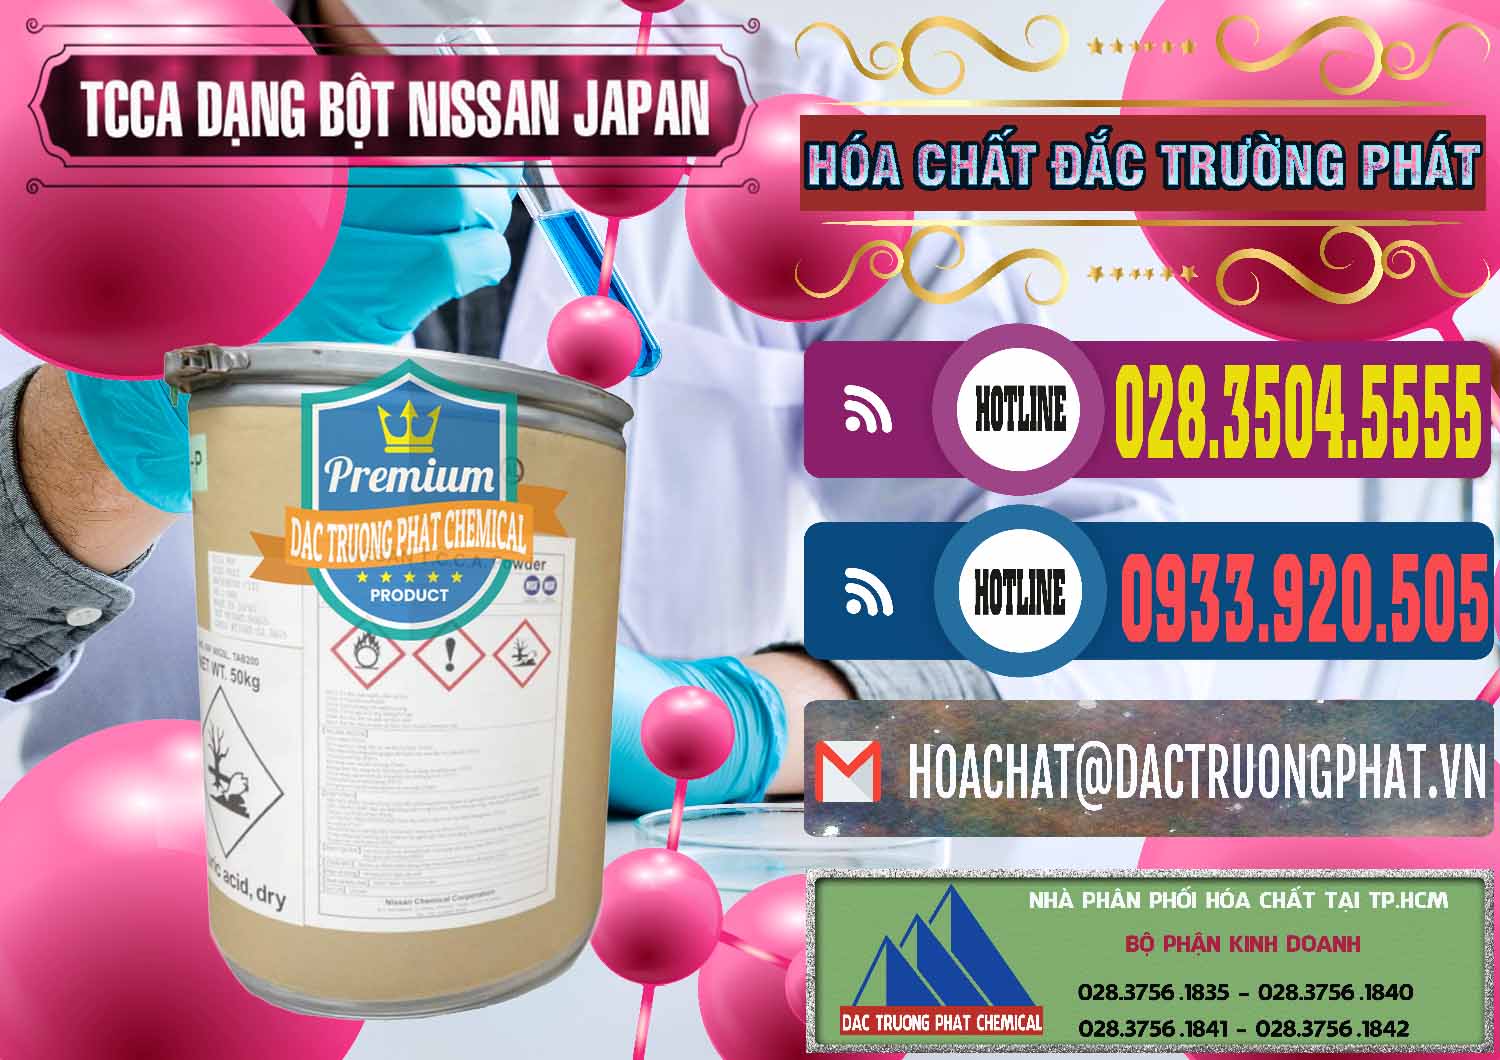 Đơn vị chuyên phân phối _ bán TCCA - Acid Trichloroisocyanuric 90% Dạng Bột Nissan Nhật Bản Japan - 0375 - Công ty chuyên phân phối ( nhập khẩu ) hóa chất tại TP.HCM - muabanhoachat.com.vn